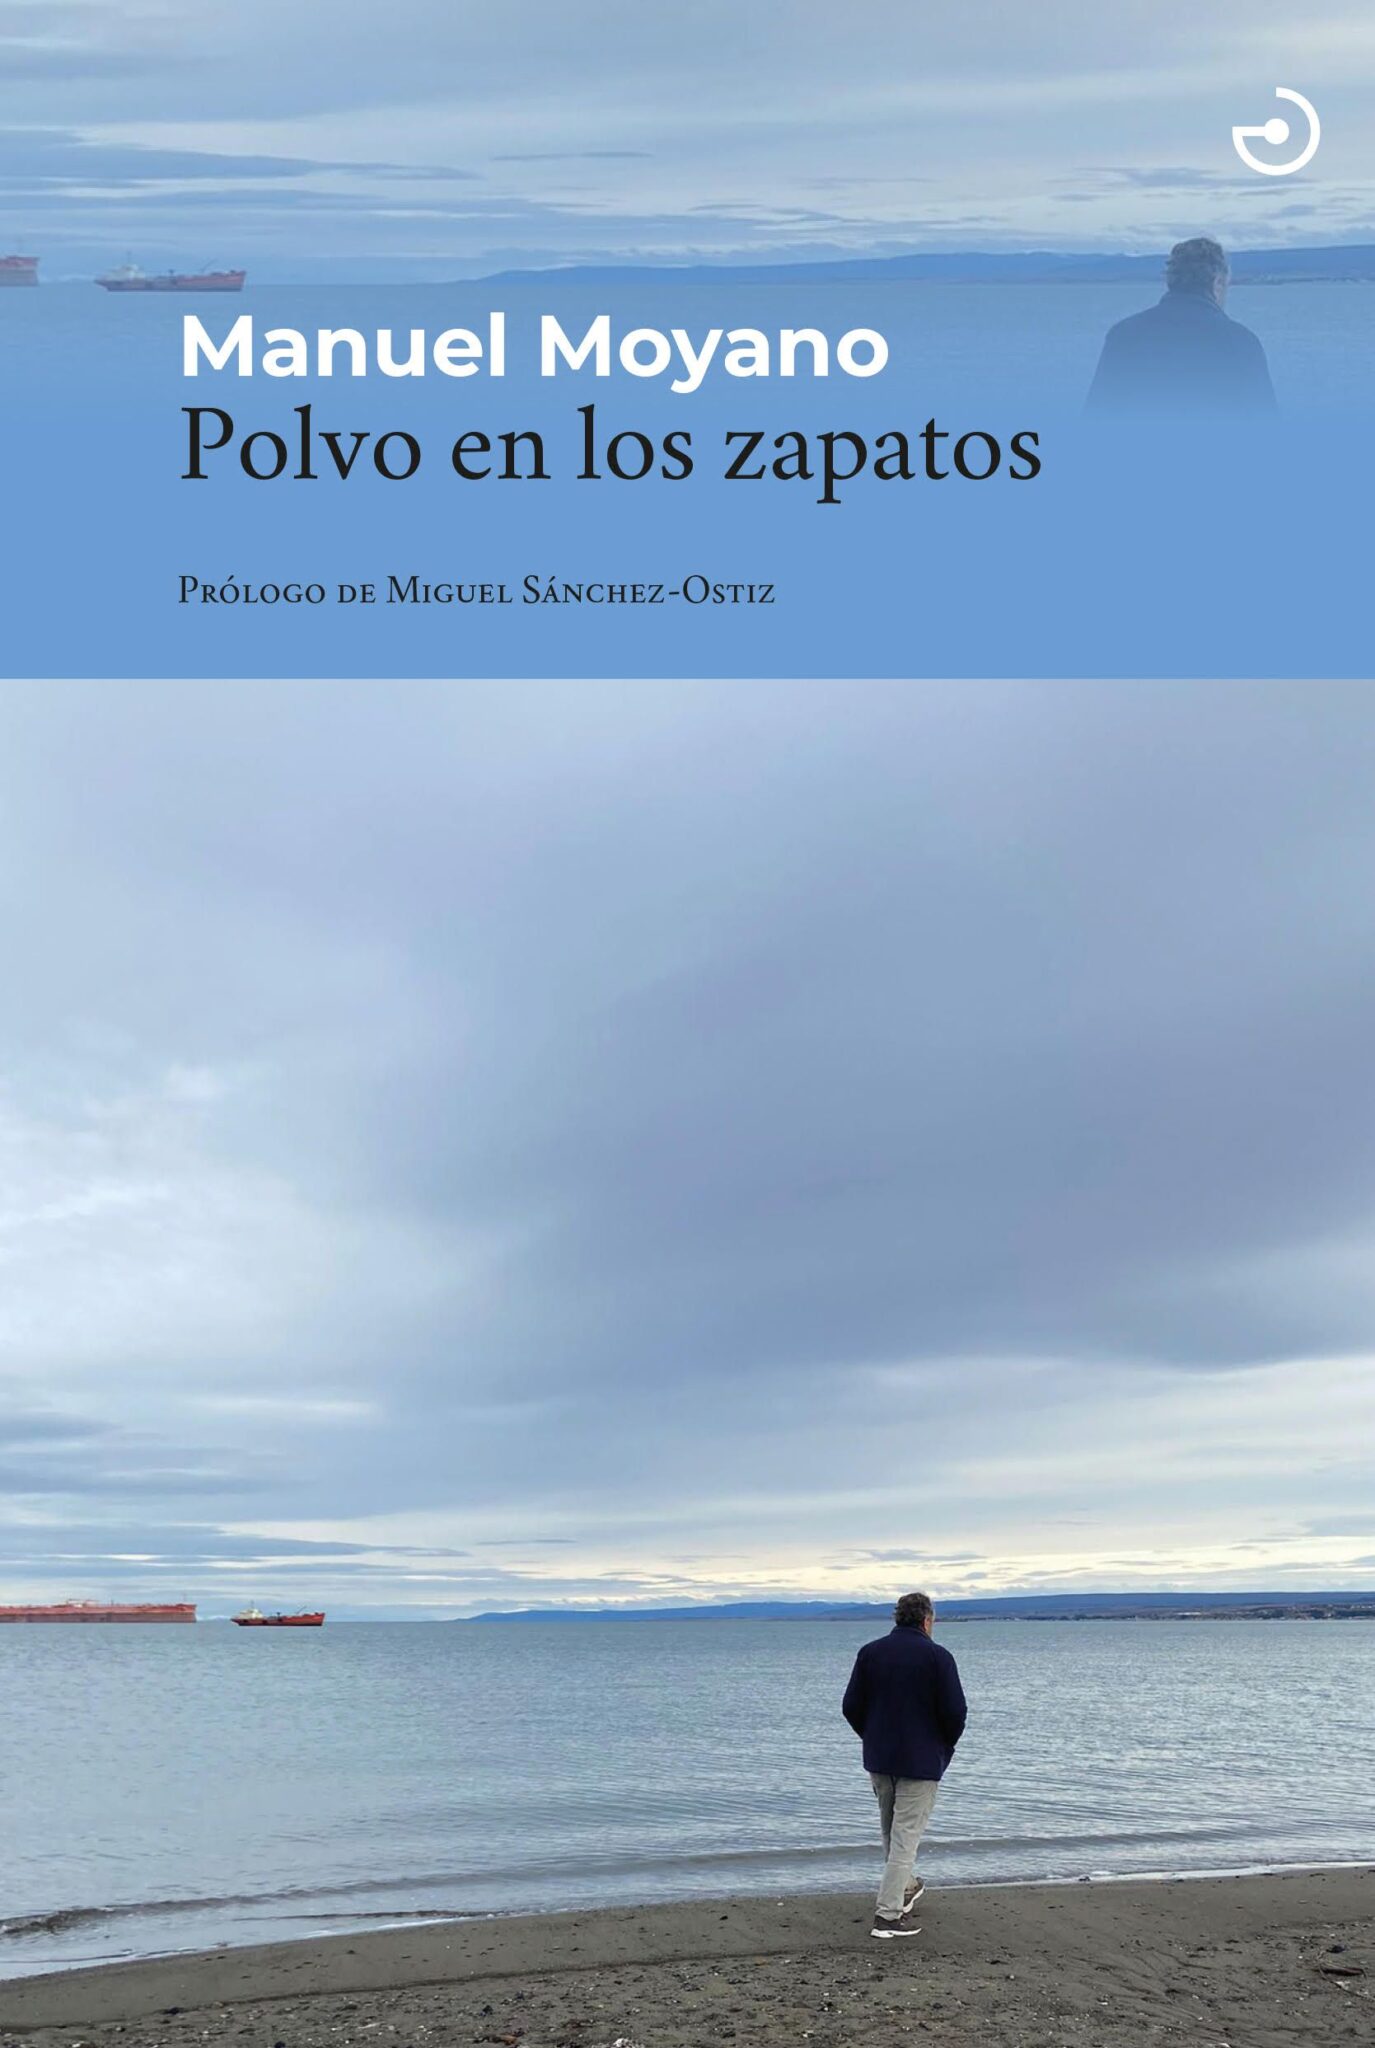 CULTURA | Manuel Moyano presenta su libro ‘Polvo en los zapatos’ el miércoles 7 de junio en la Biblioteca ‘Salvador García Aguilar’ de Molina de Segura